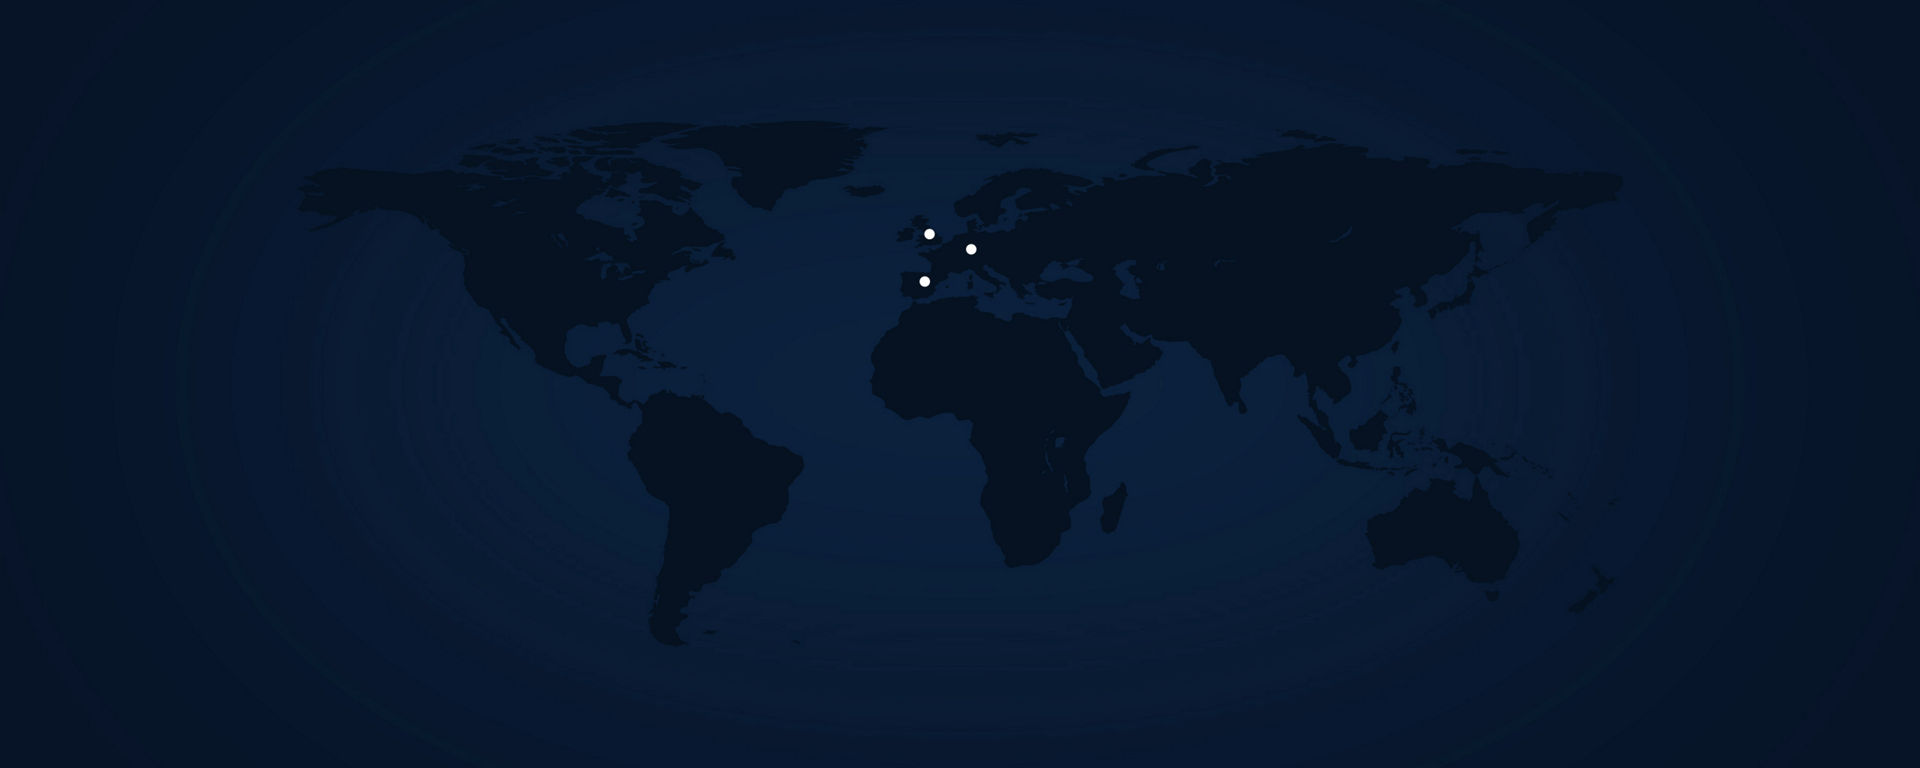 Mappa del mondo con Londra, Parigi e Madrid contrassegnate